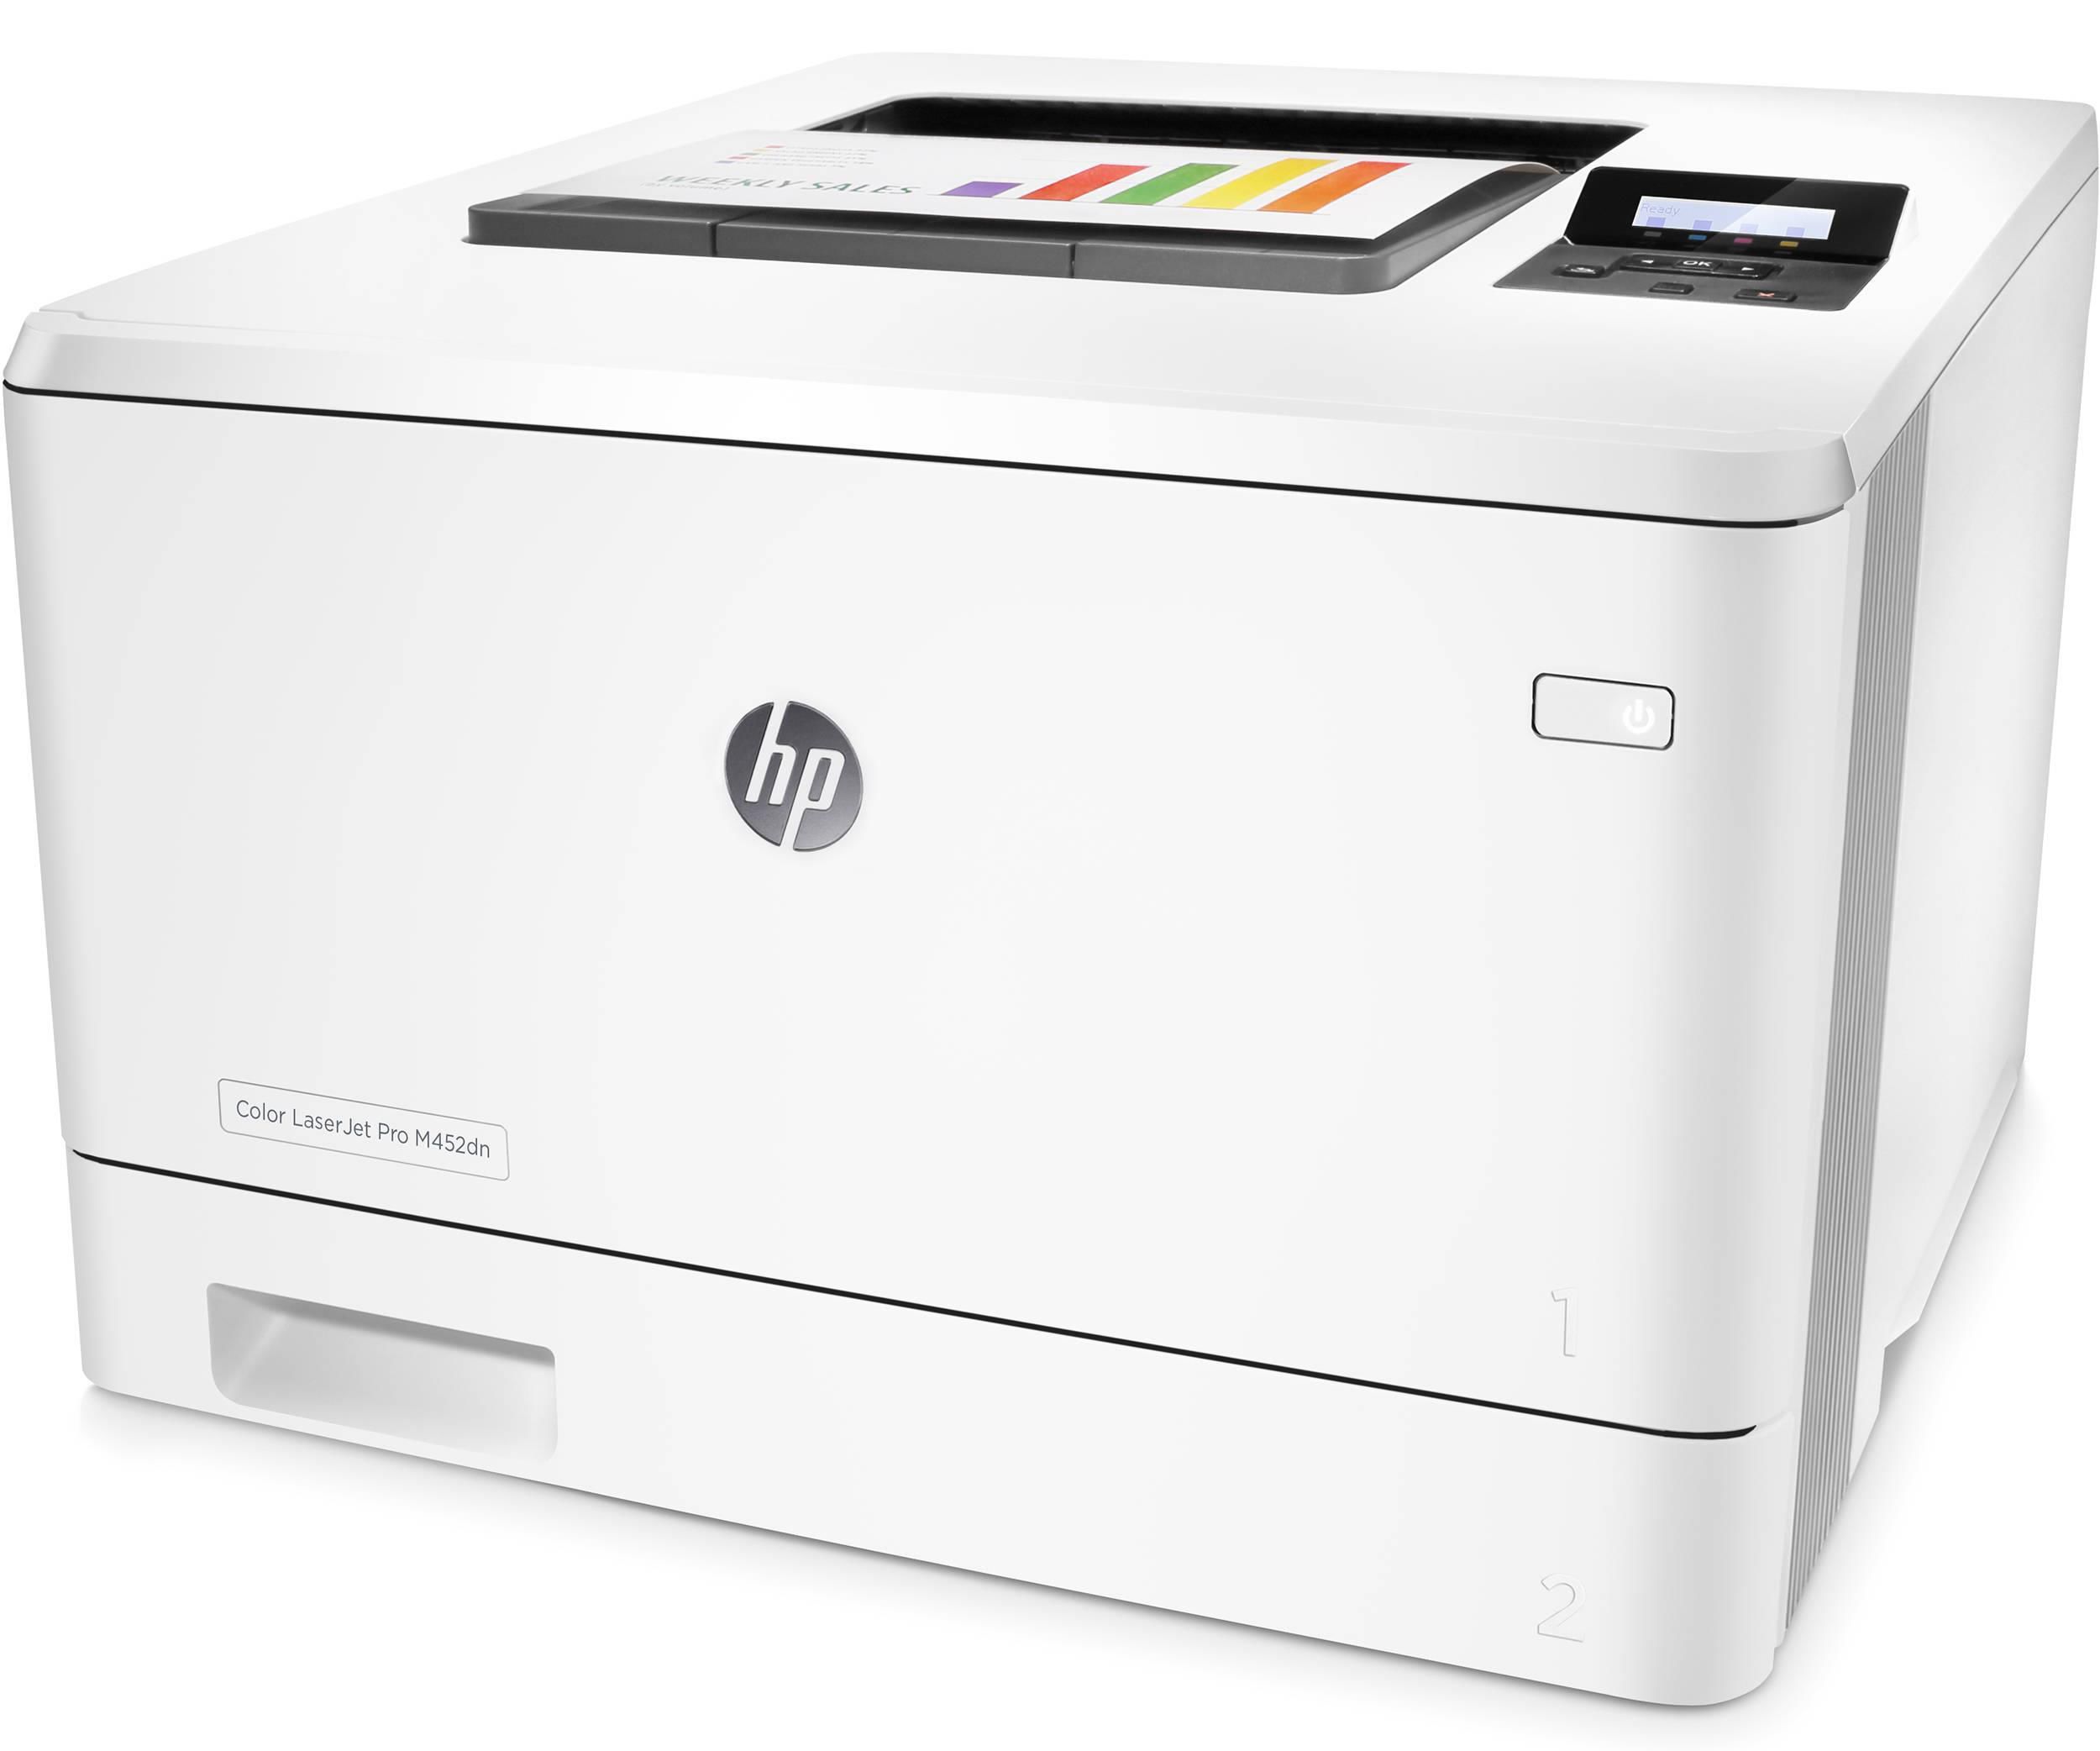 HP Color LaserJet Pro M452dn.